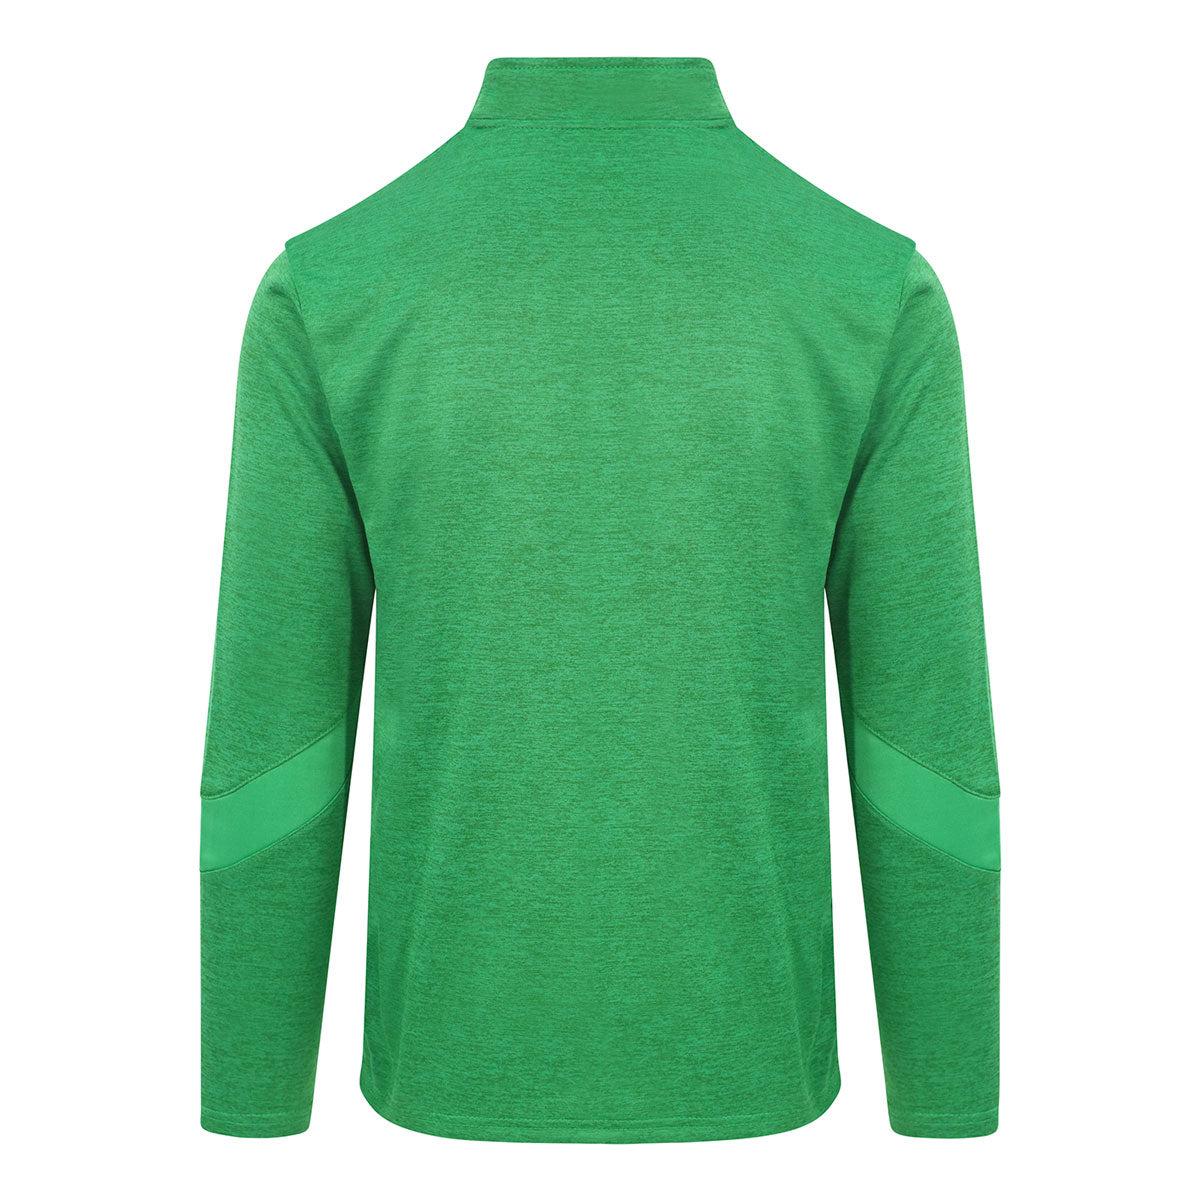 Mc Keever Ireland Supporters Core 22 1/4 Zip Top - Adult - Green